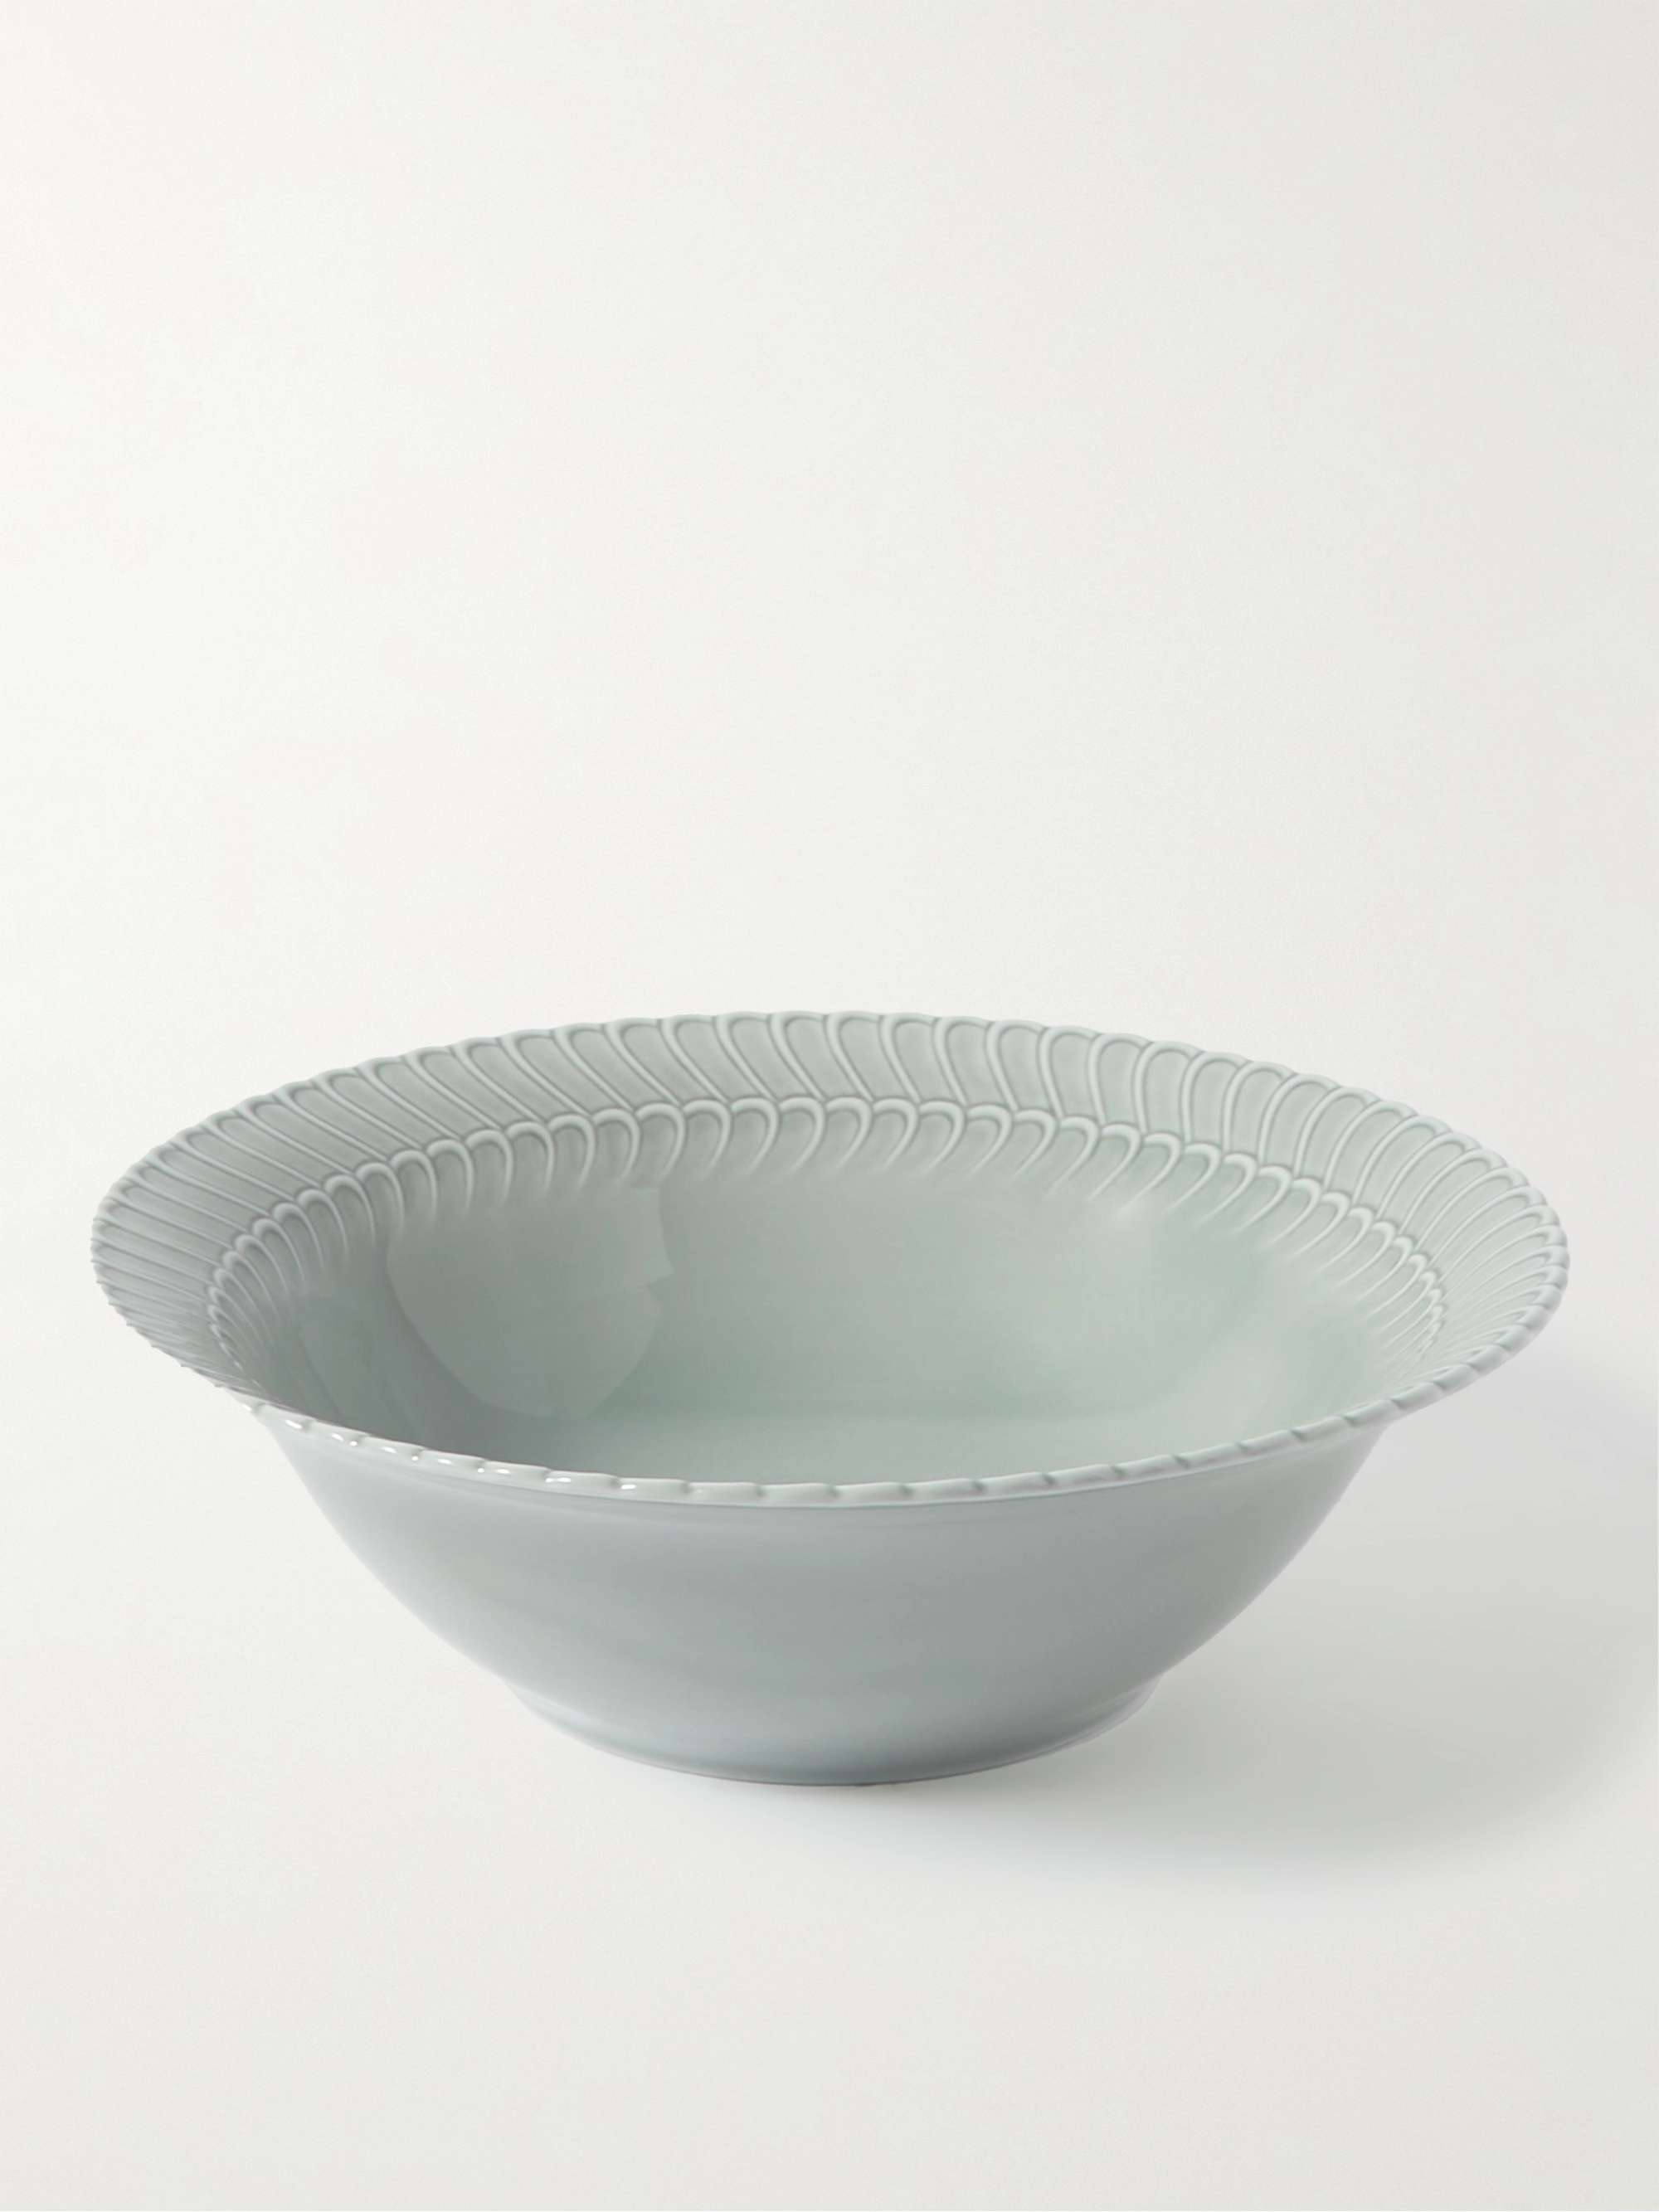 BUCCELLATI Double Rouche Porcelain Salad Bowl